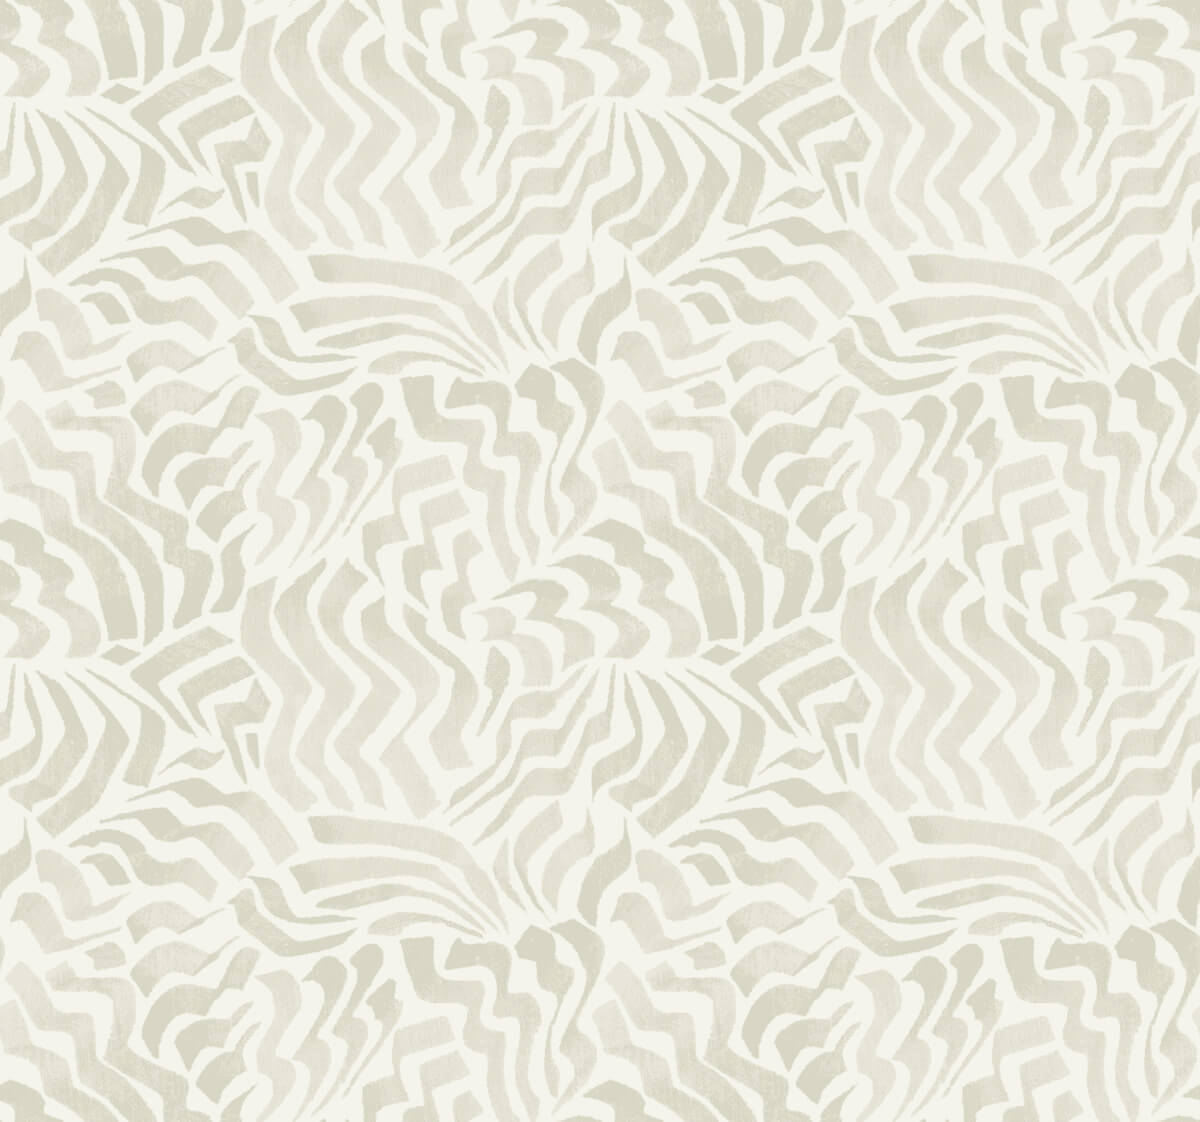 Lemieux et Cie Signature Zora Wave Wallpaper - Light Grey